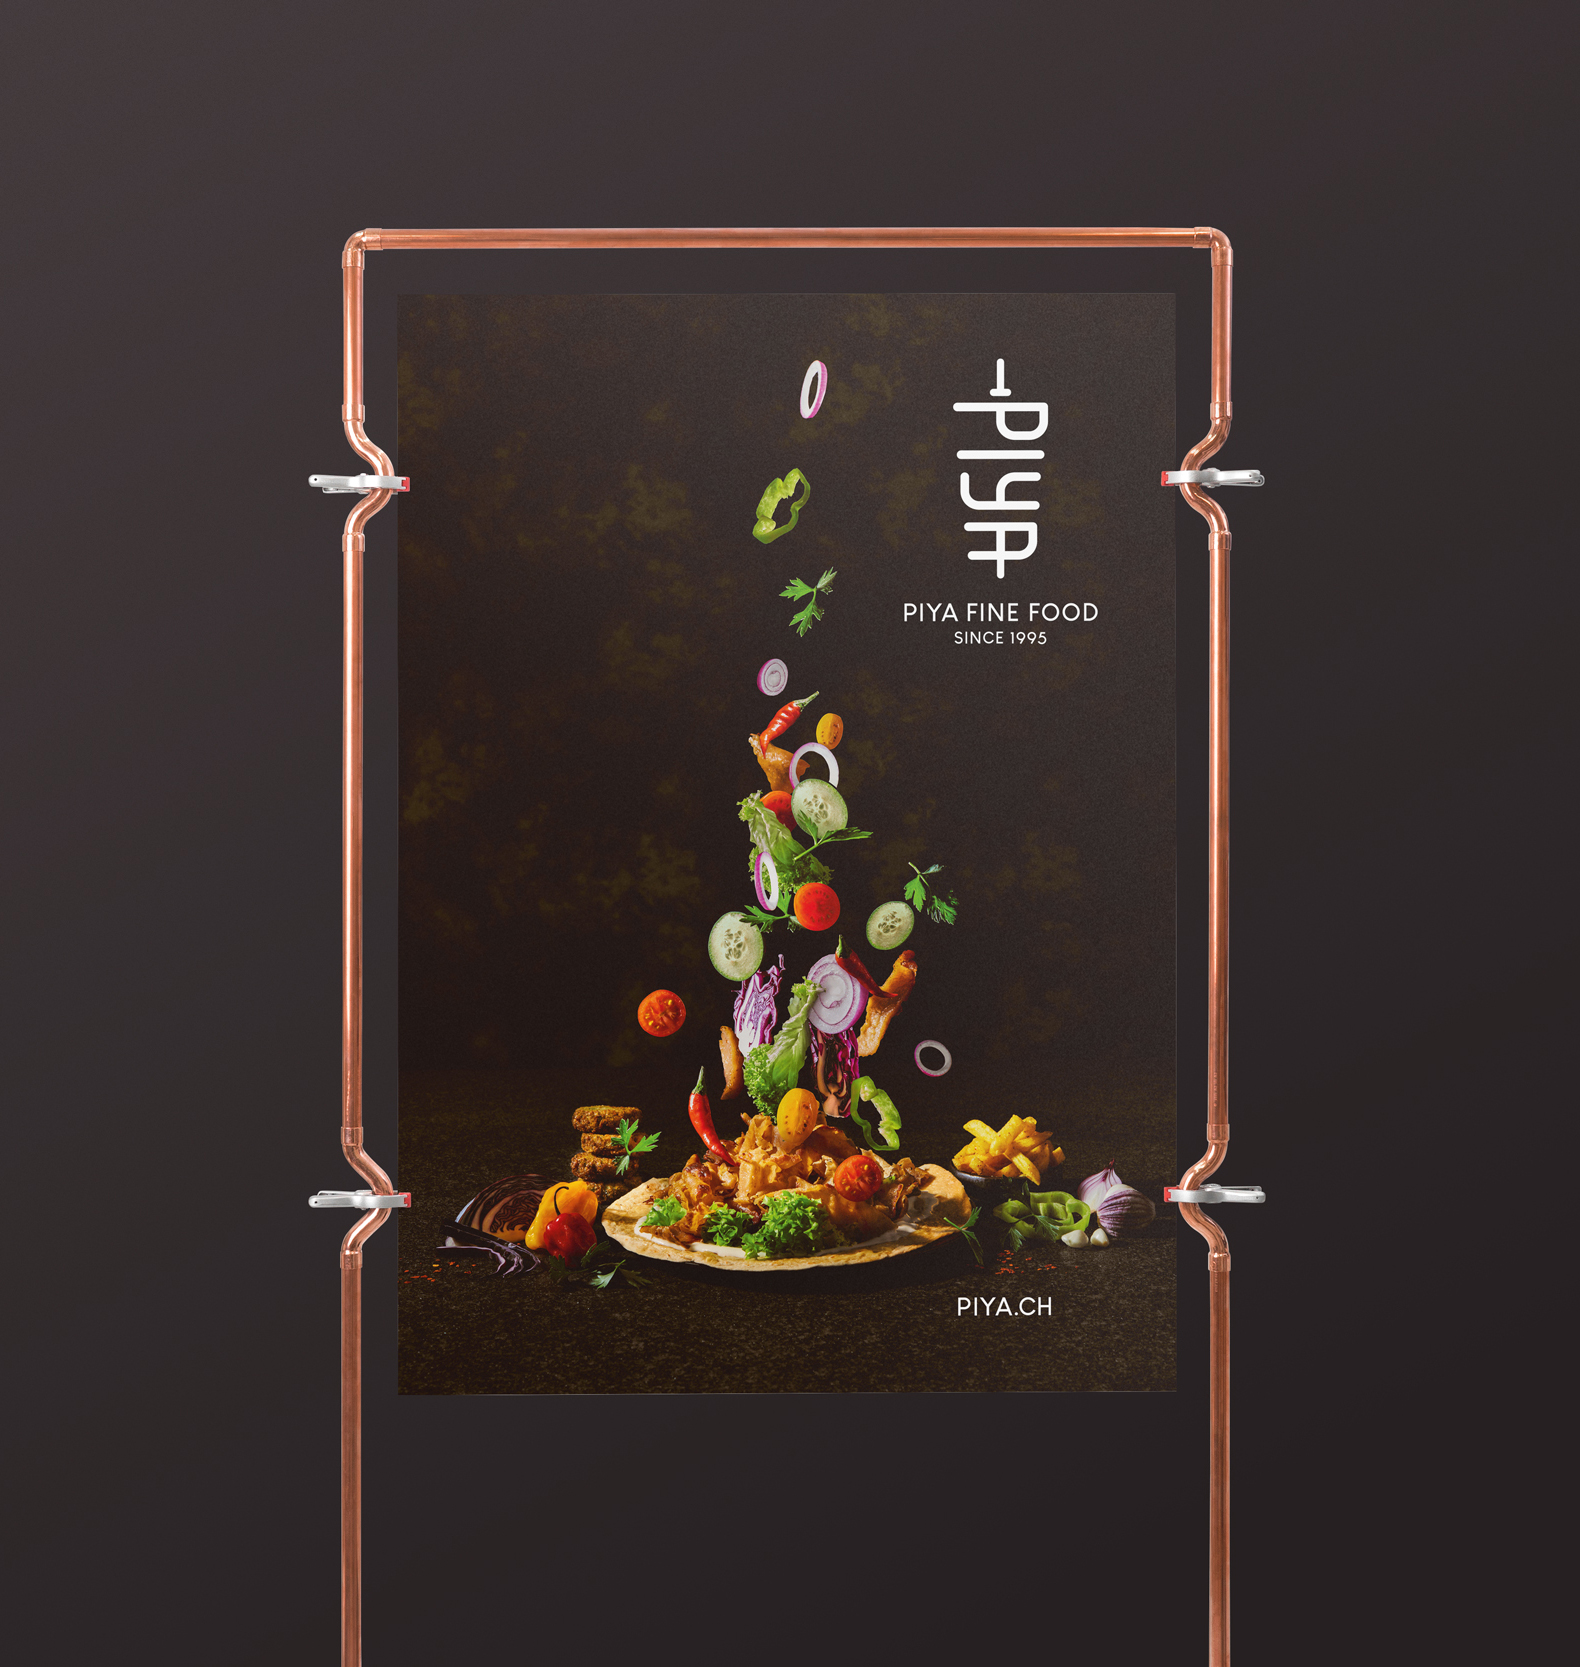 Eine PIYA-Werbekarte: Ein Haufen buntes gerüstetes Gemüse schwebt über einem Teller und bildet einen Kontrast zum dunklen Hintergrund.